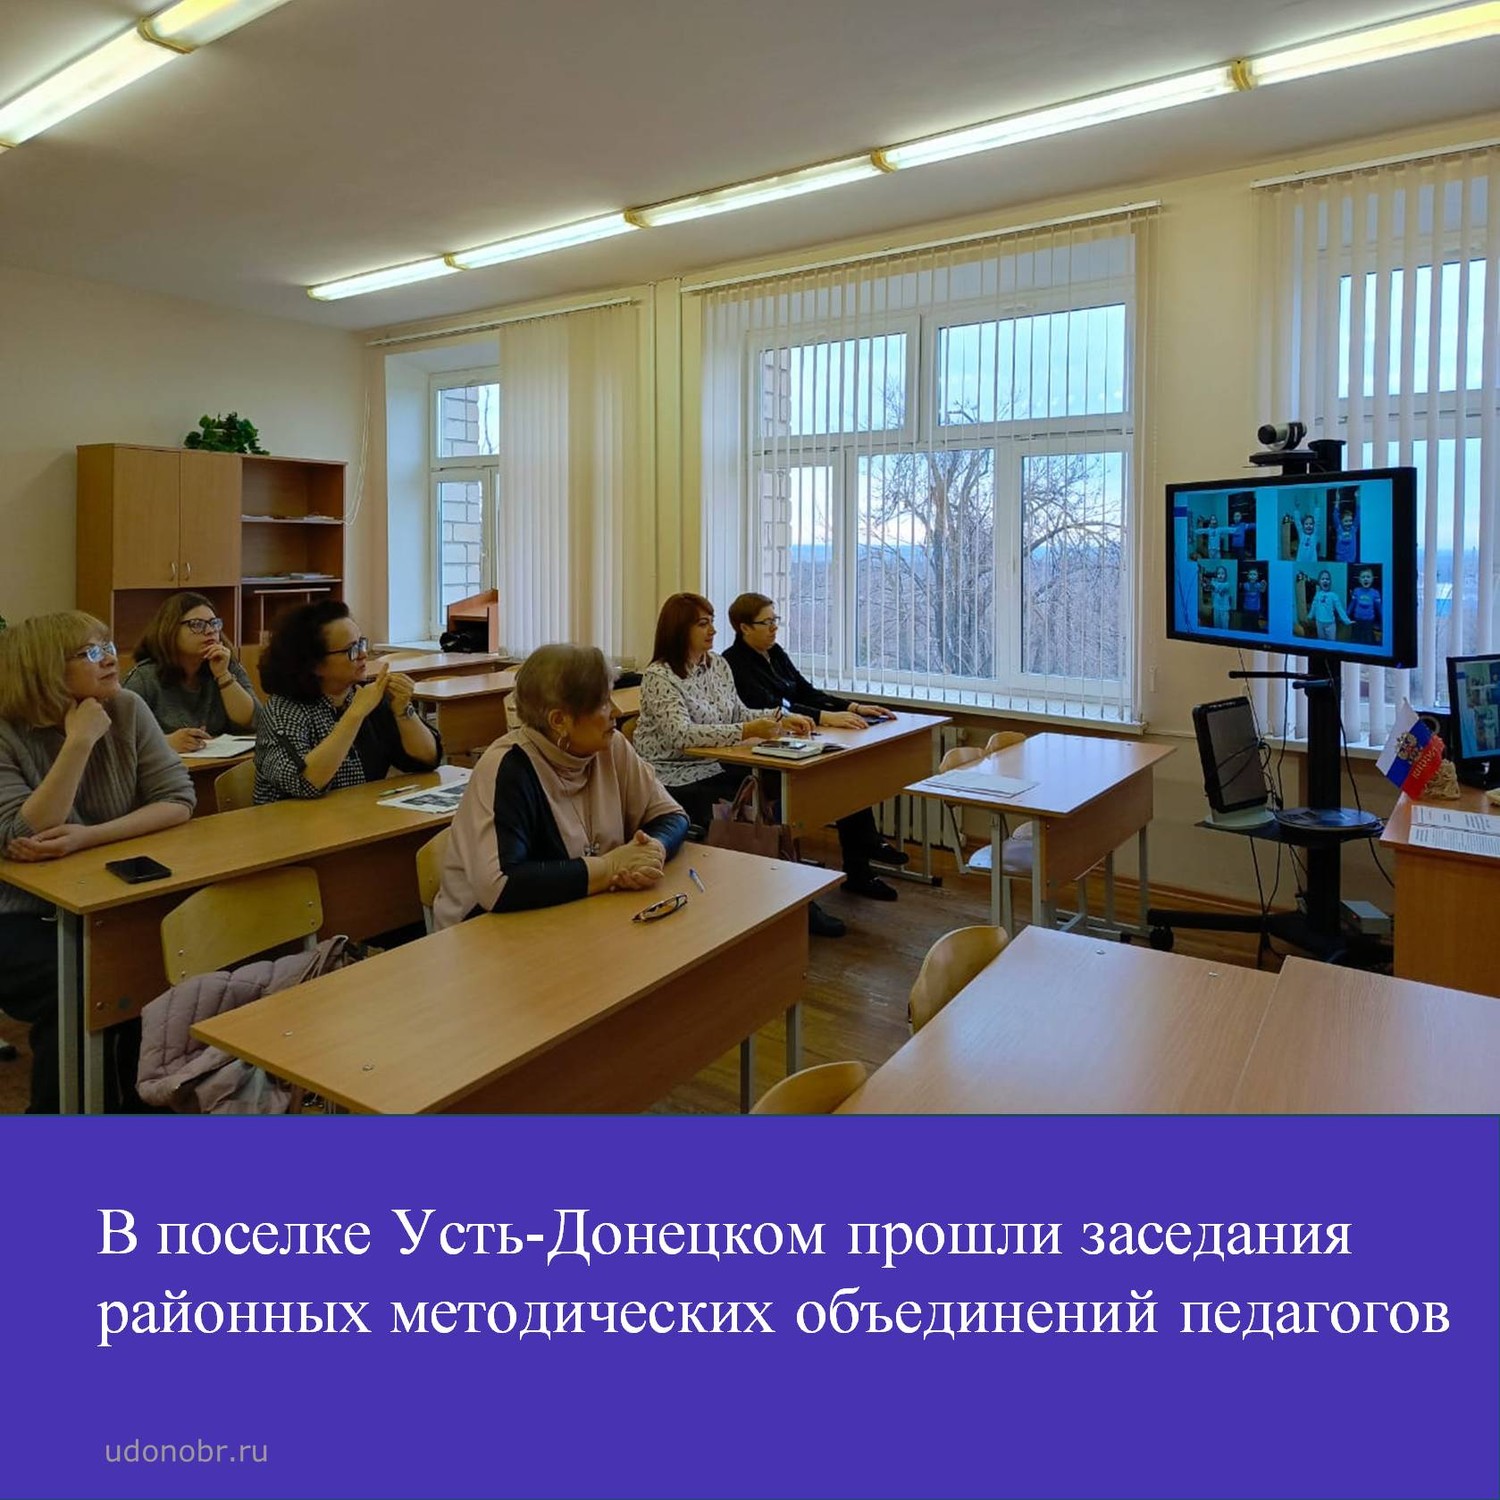 В поселке Усть-Донецком прошли заседания районных методических объединений педагогов